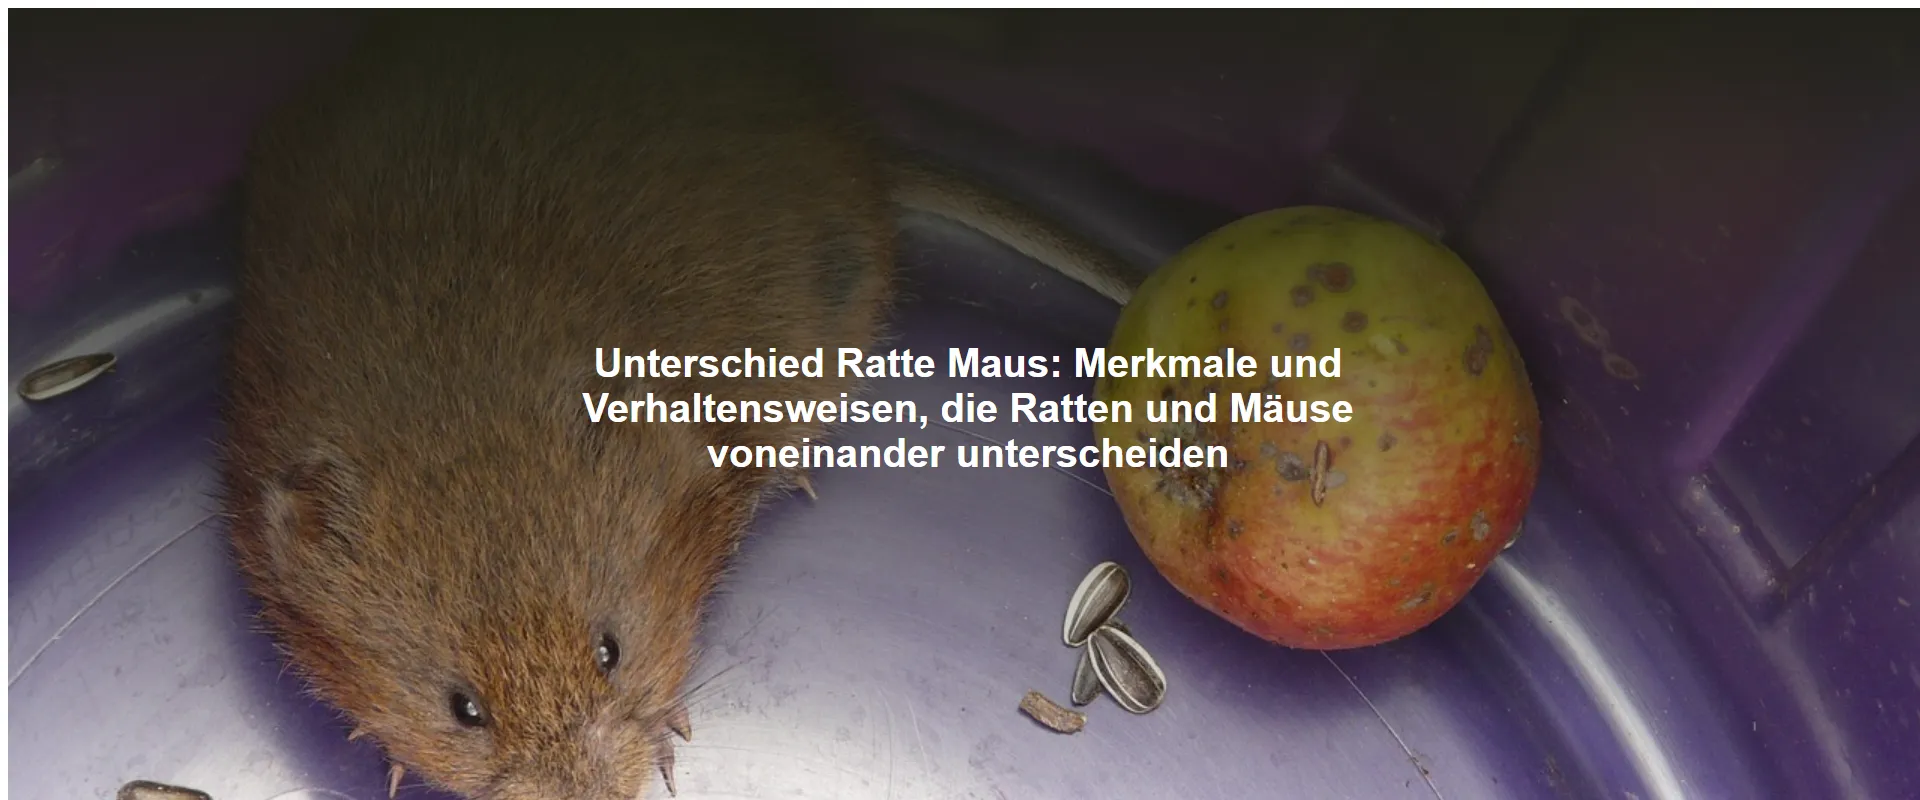 Unterschied Ratte Maus – Merkmale und Verhaltensweisen, die Ratten und Mäuse voneinander unterscheiden